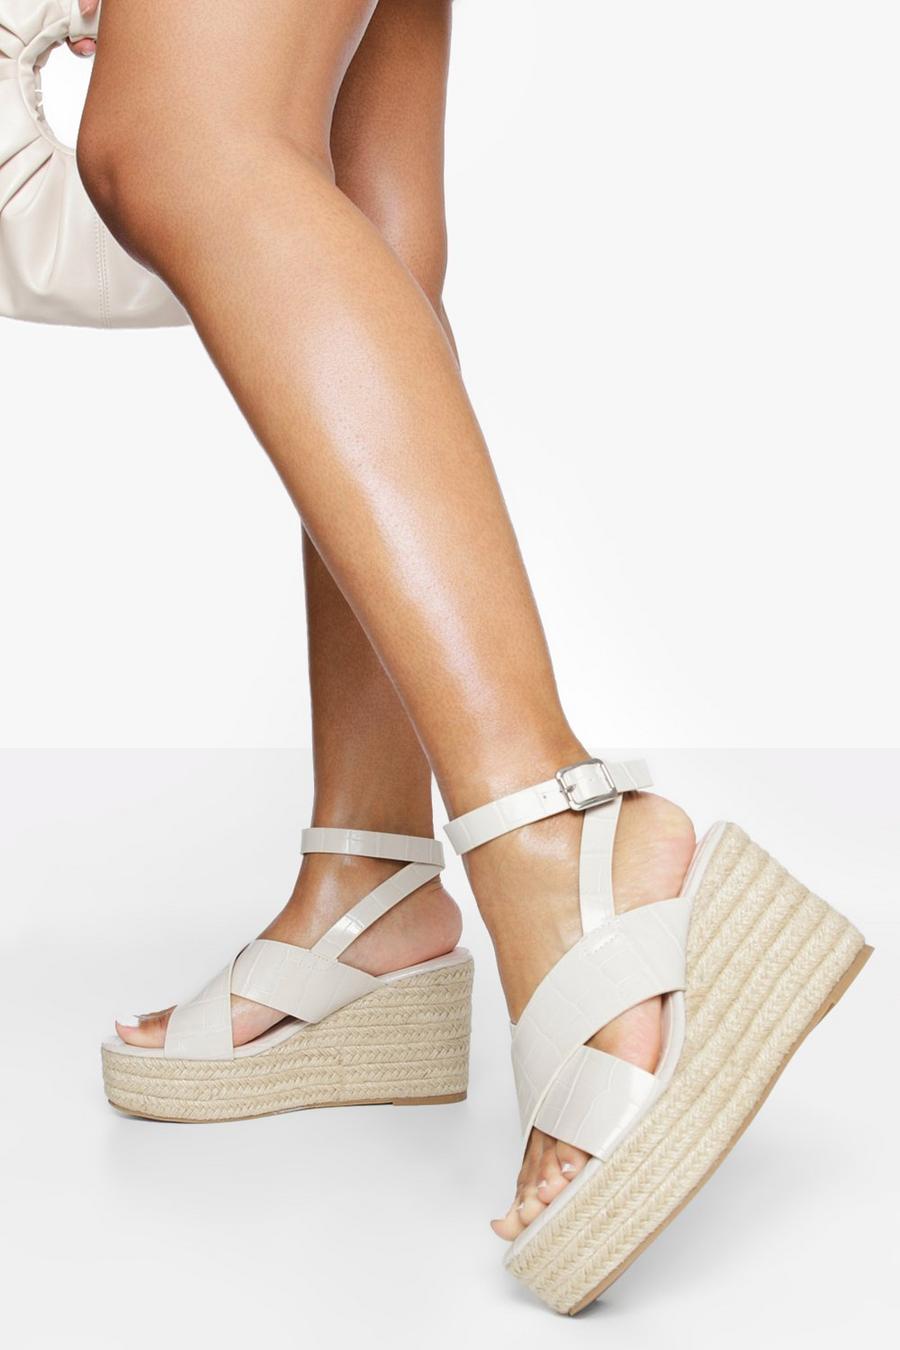 Sandales croco pieds larges à talons compensés, Off white blanc